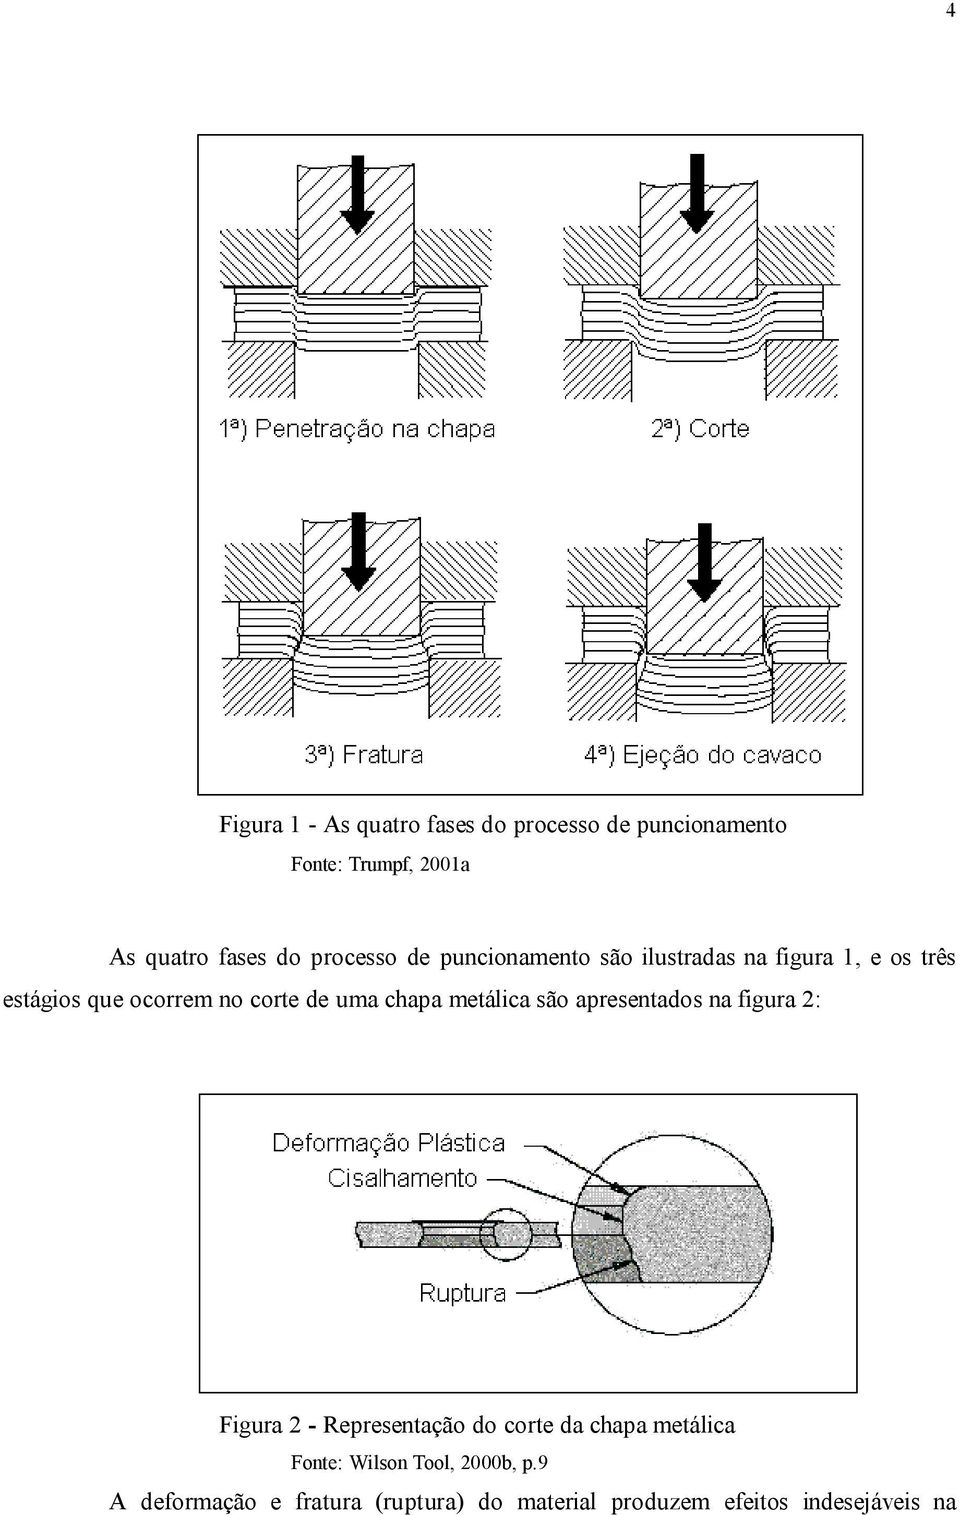 chapa metálica são apresentados na figura 2: Figura 2 - Representação do corte da chapa metálica